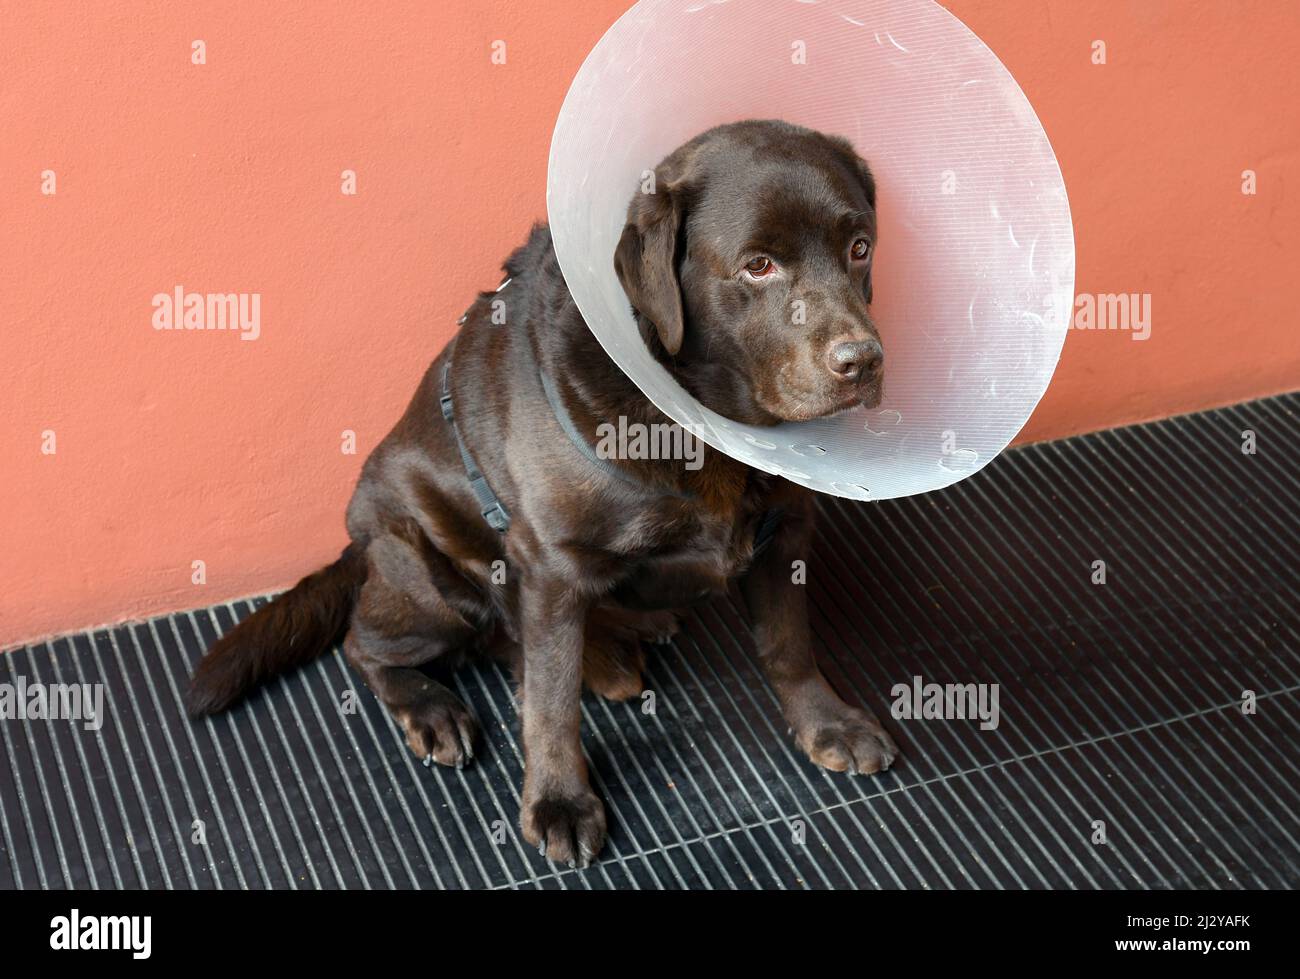 Der braune Labrador Retriever Hund trägt einen großen Plastikkegel, der vom Tierarzt nach der Operation geliefert wird, um zu verhindern, dass er eine Wunde leckt oder verletzt Stockfoto